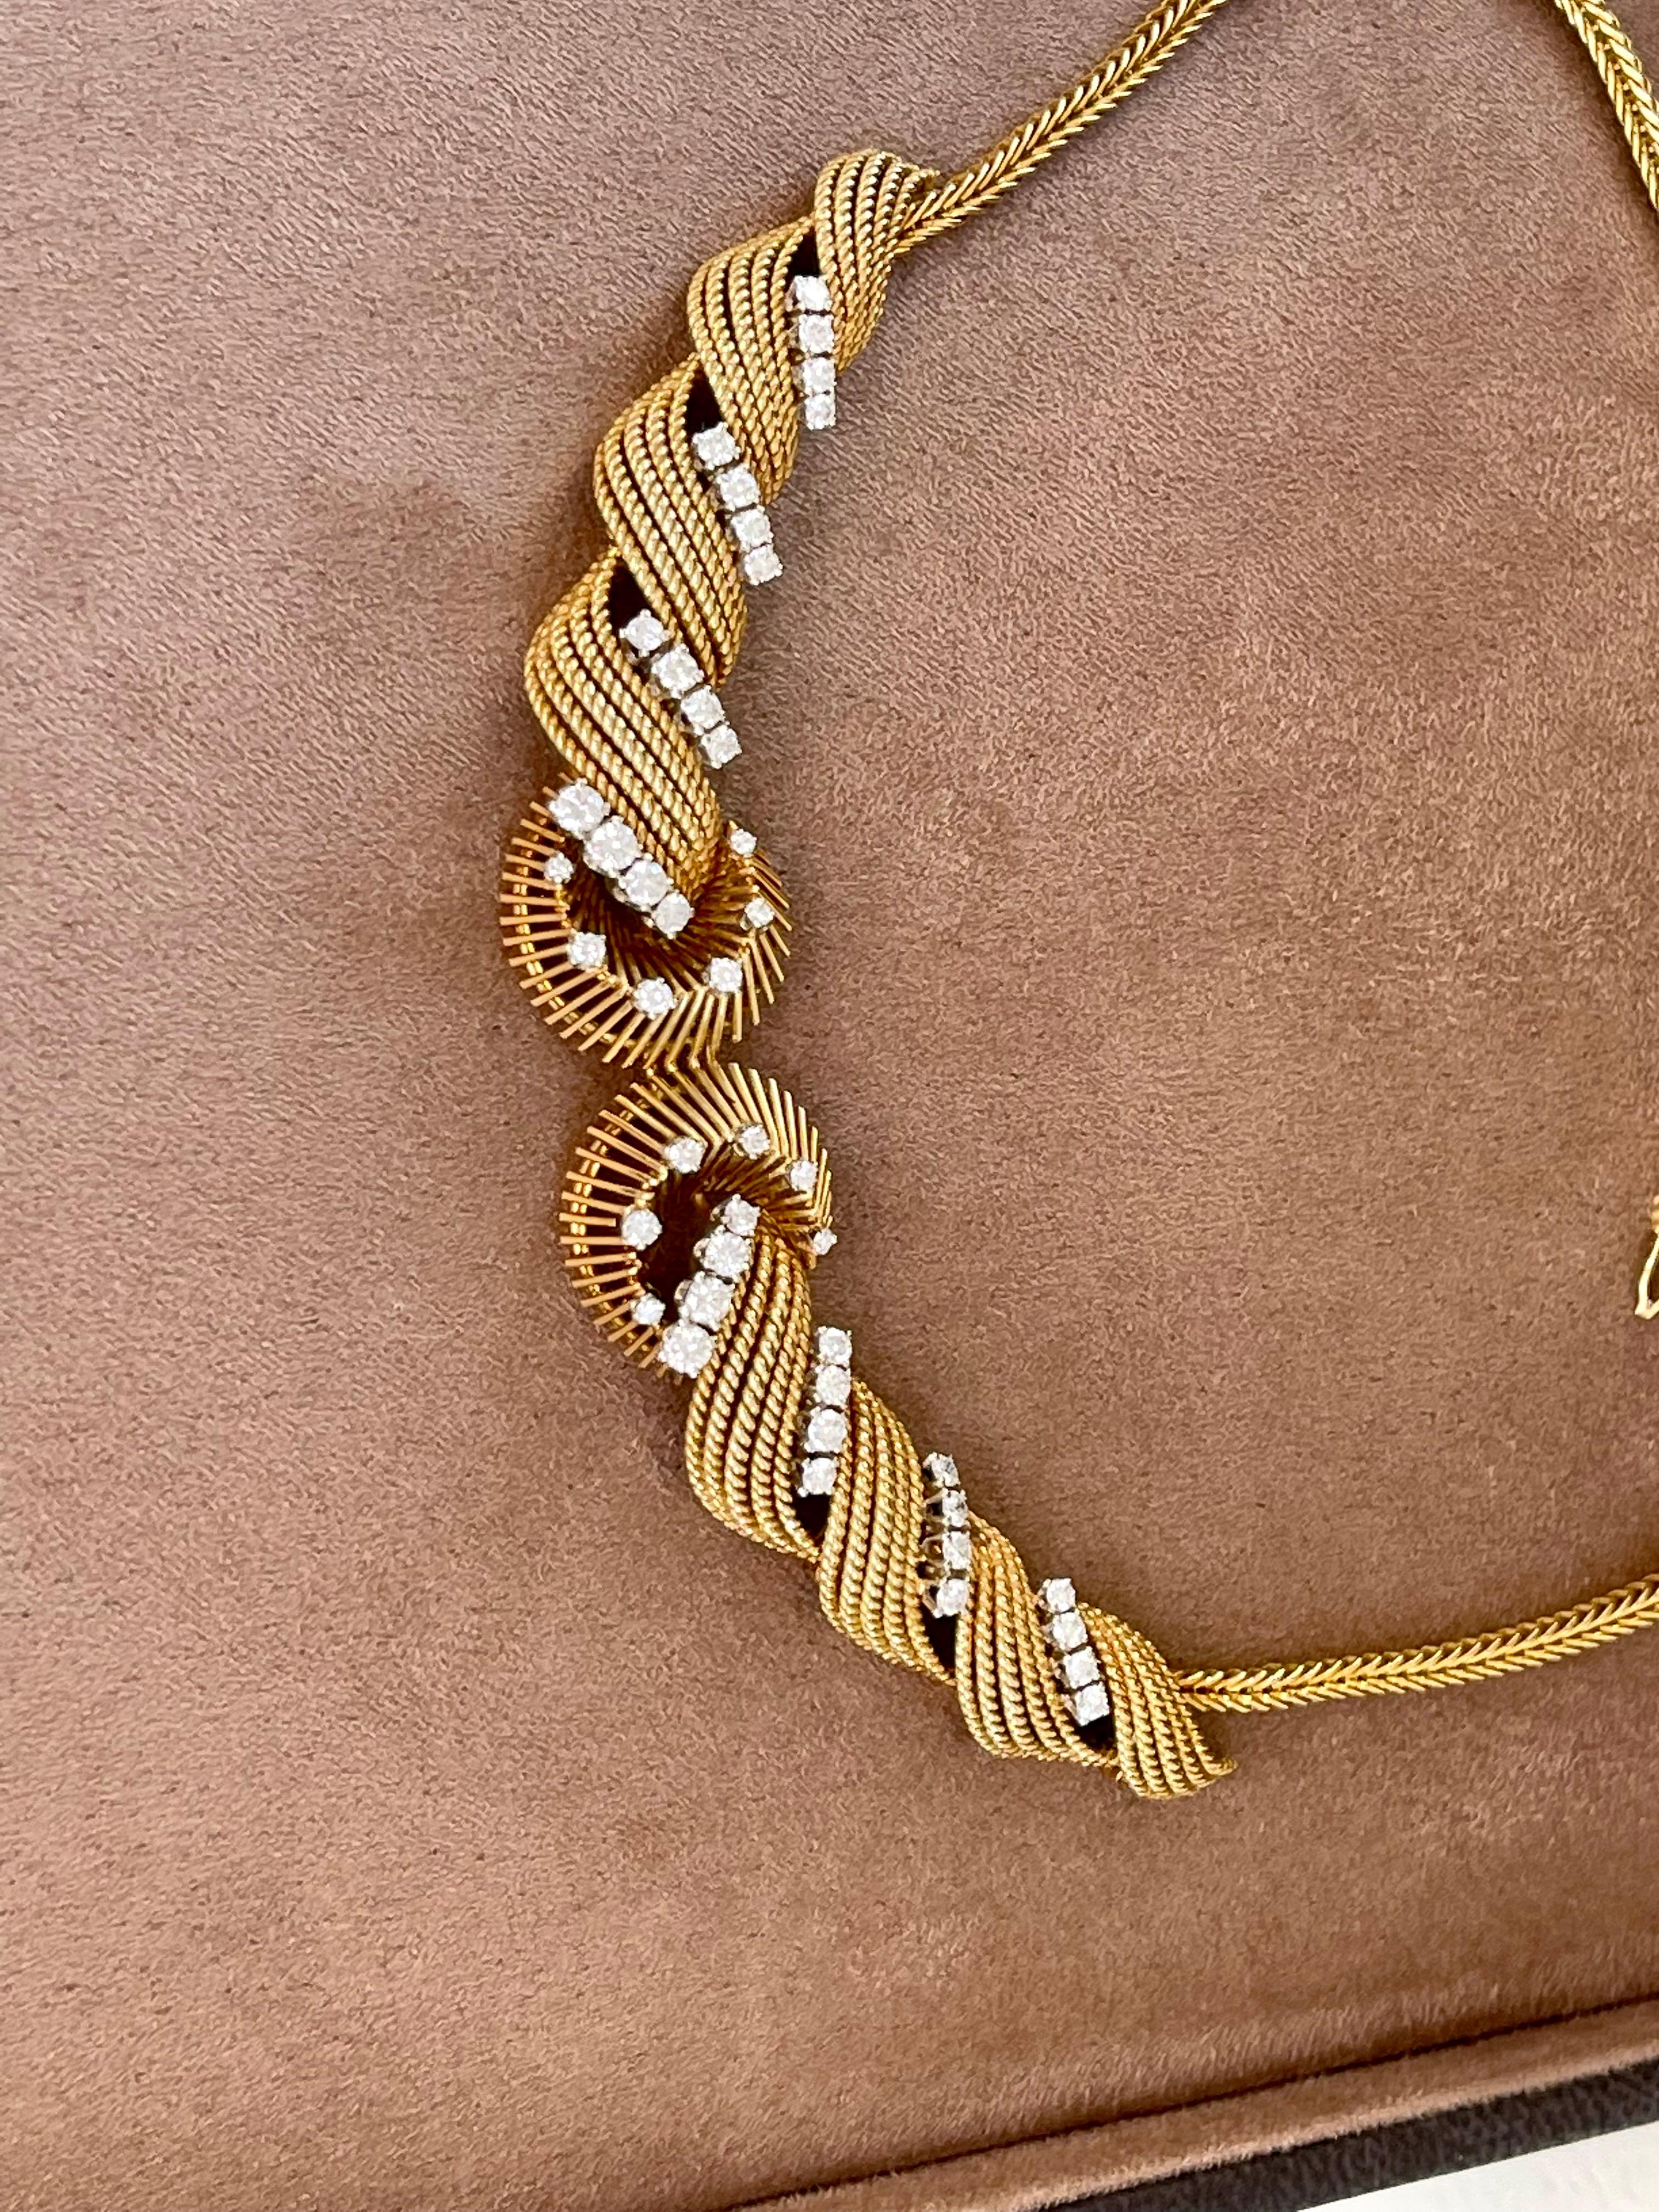 Vintage 1950s 18 K Yellow Gold Twist Wire Diamond Necklace Bucherer Switzerland For Sale 3